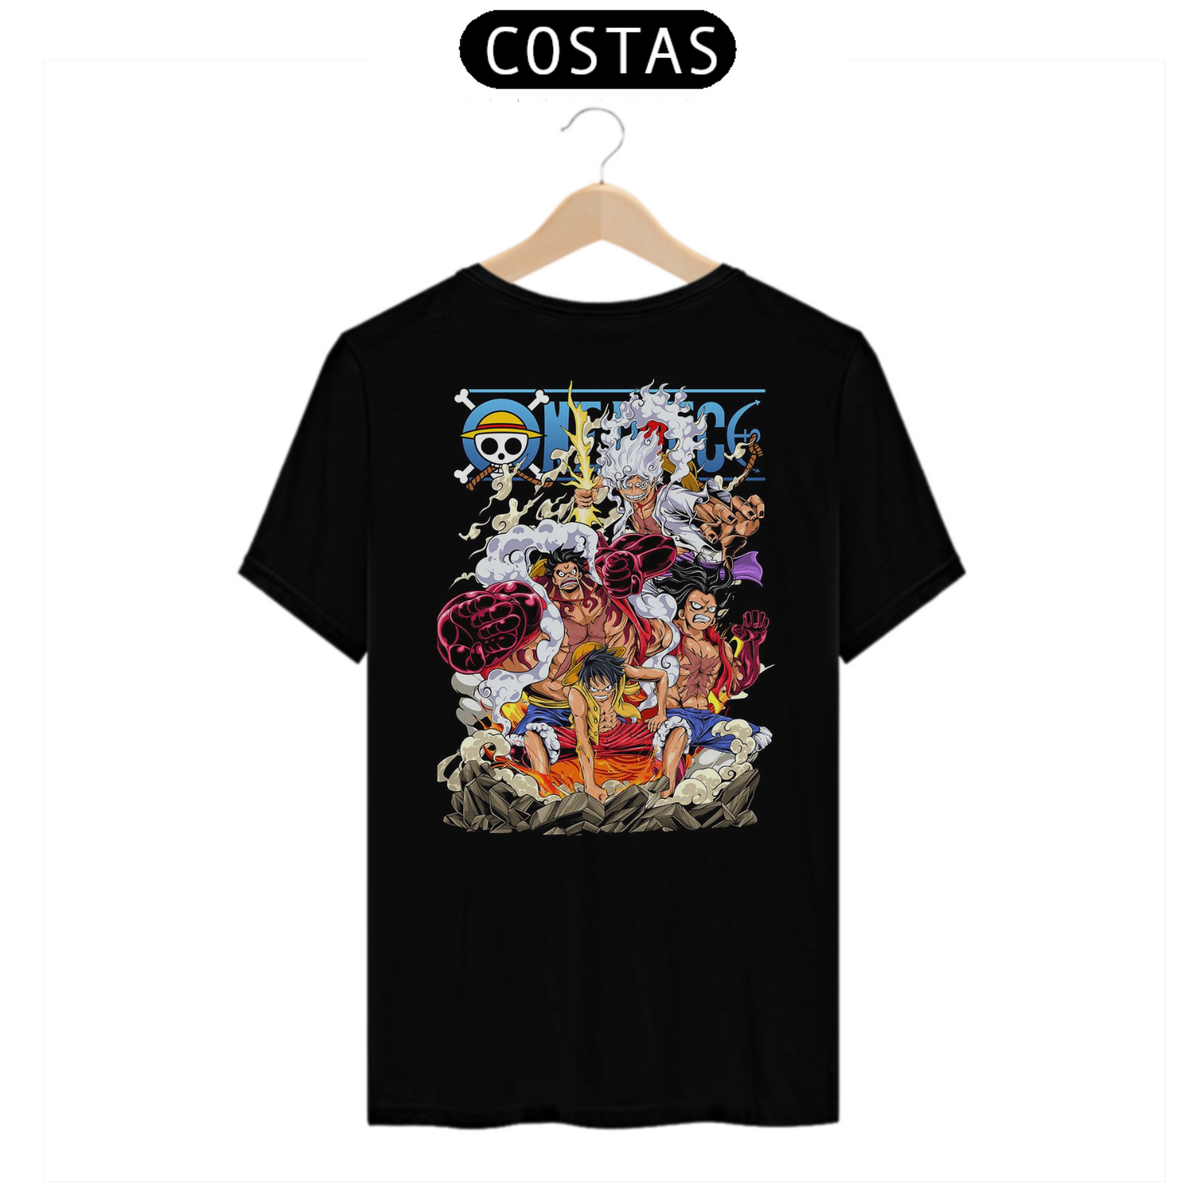 Nome do produto: T-shirt Mugiwara no Luffy